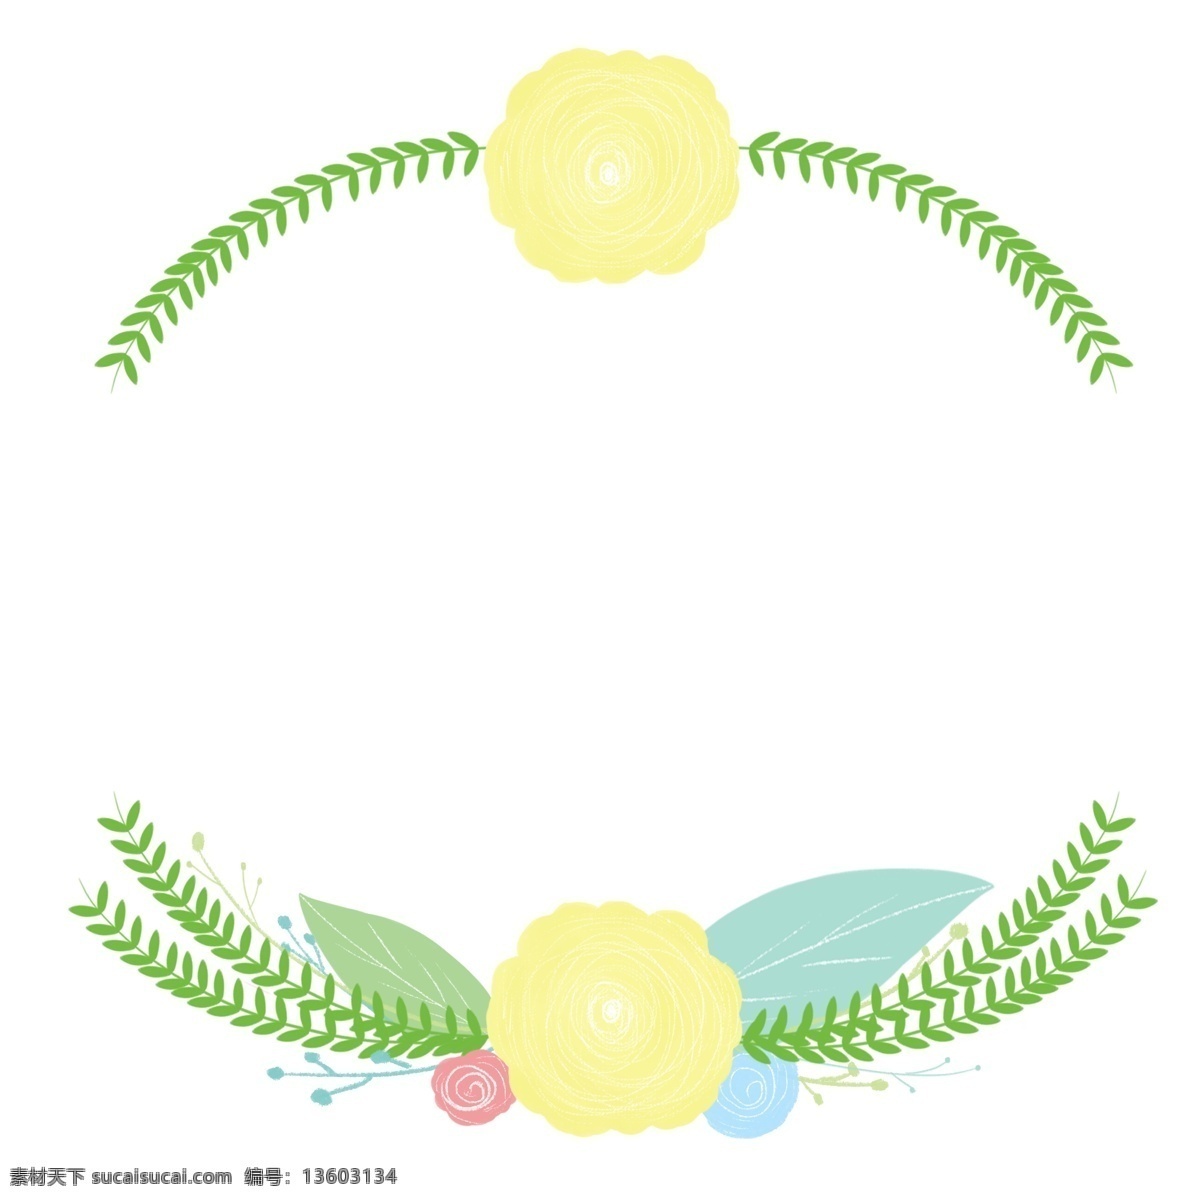 黄色 小花 边框 插画 黄色的小花 绿色的叶子 漂亮的边框 创意边框 立体边框 精美边框 植物边框